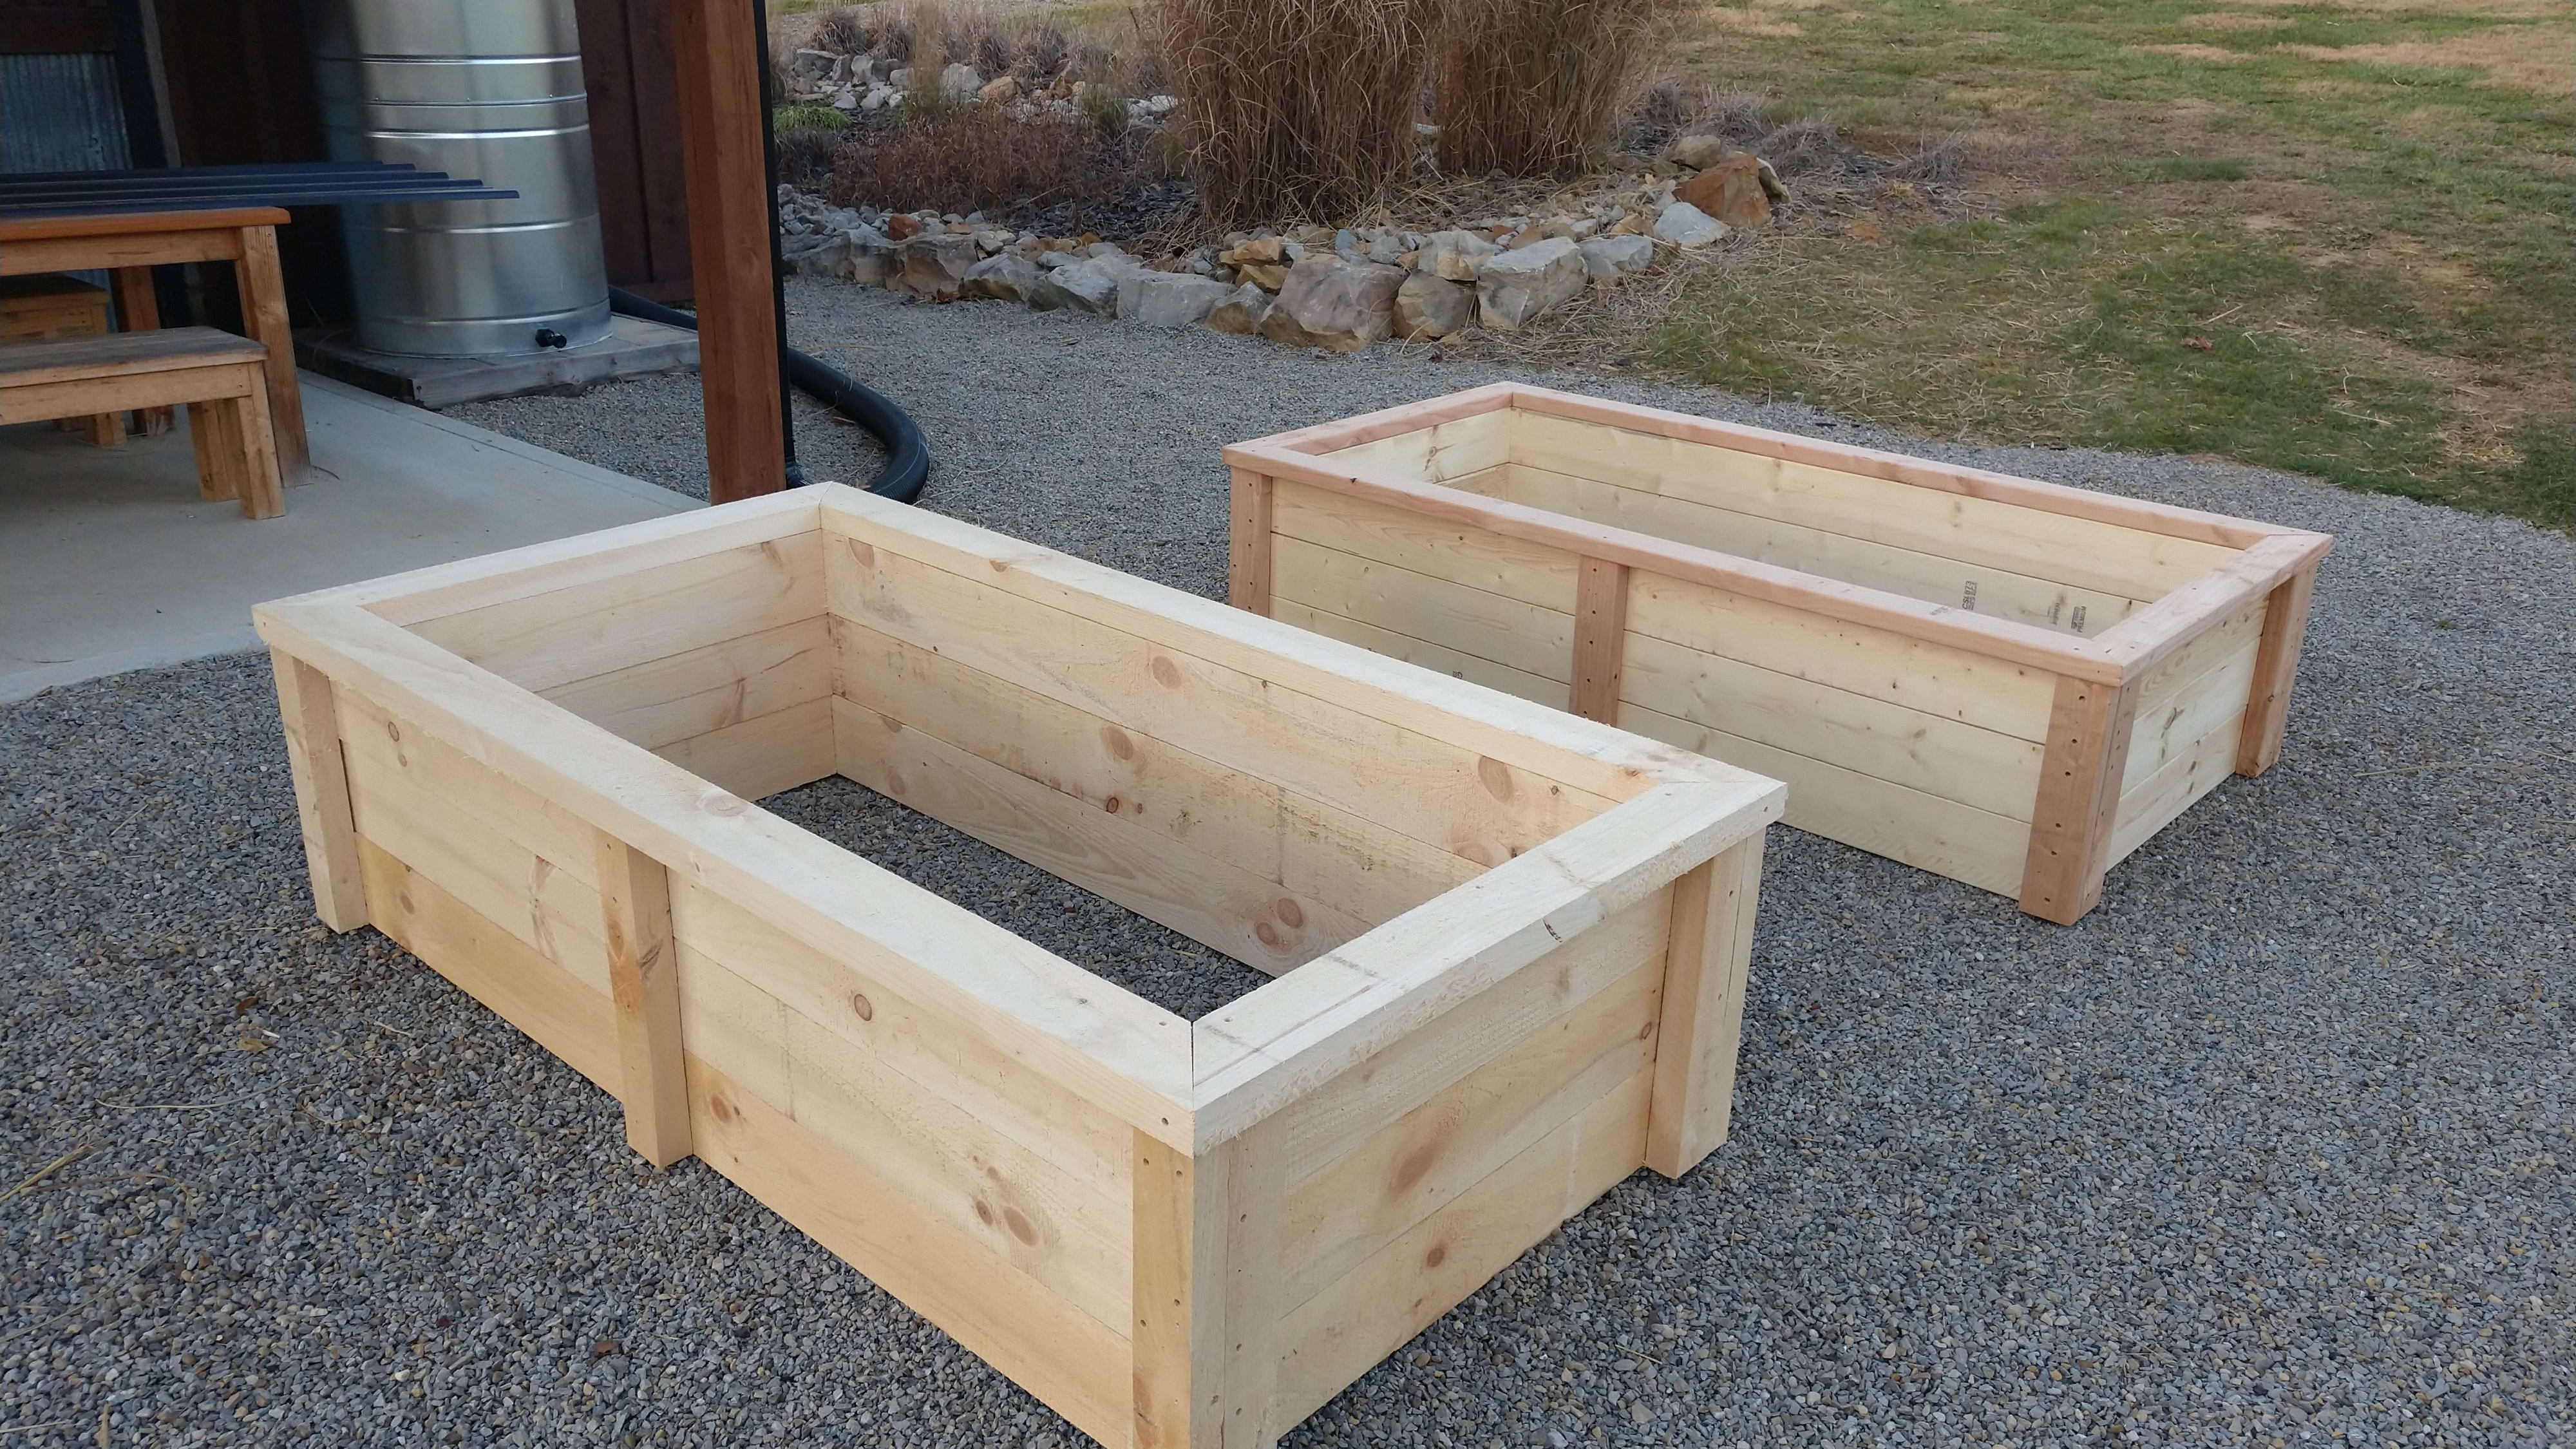 How to Make a SImple Garden Planter Box - raised bed garden!